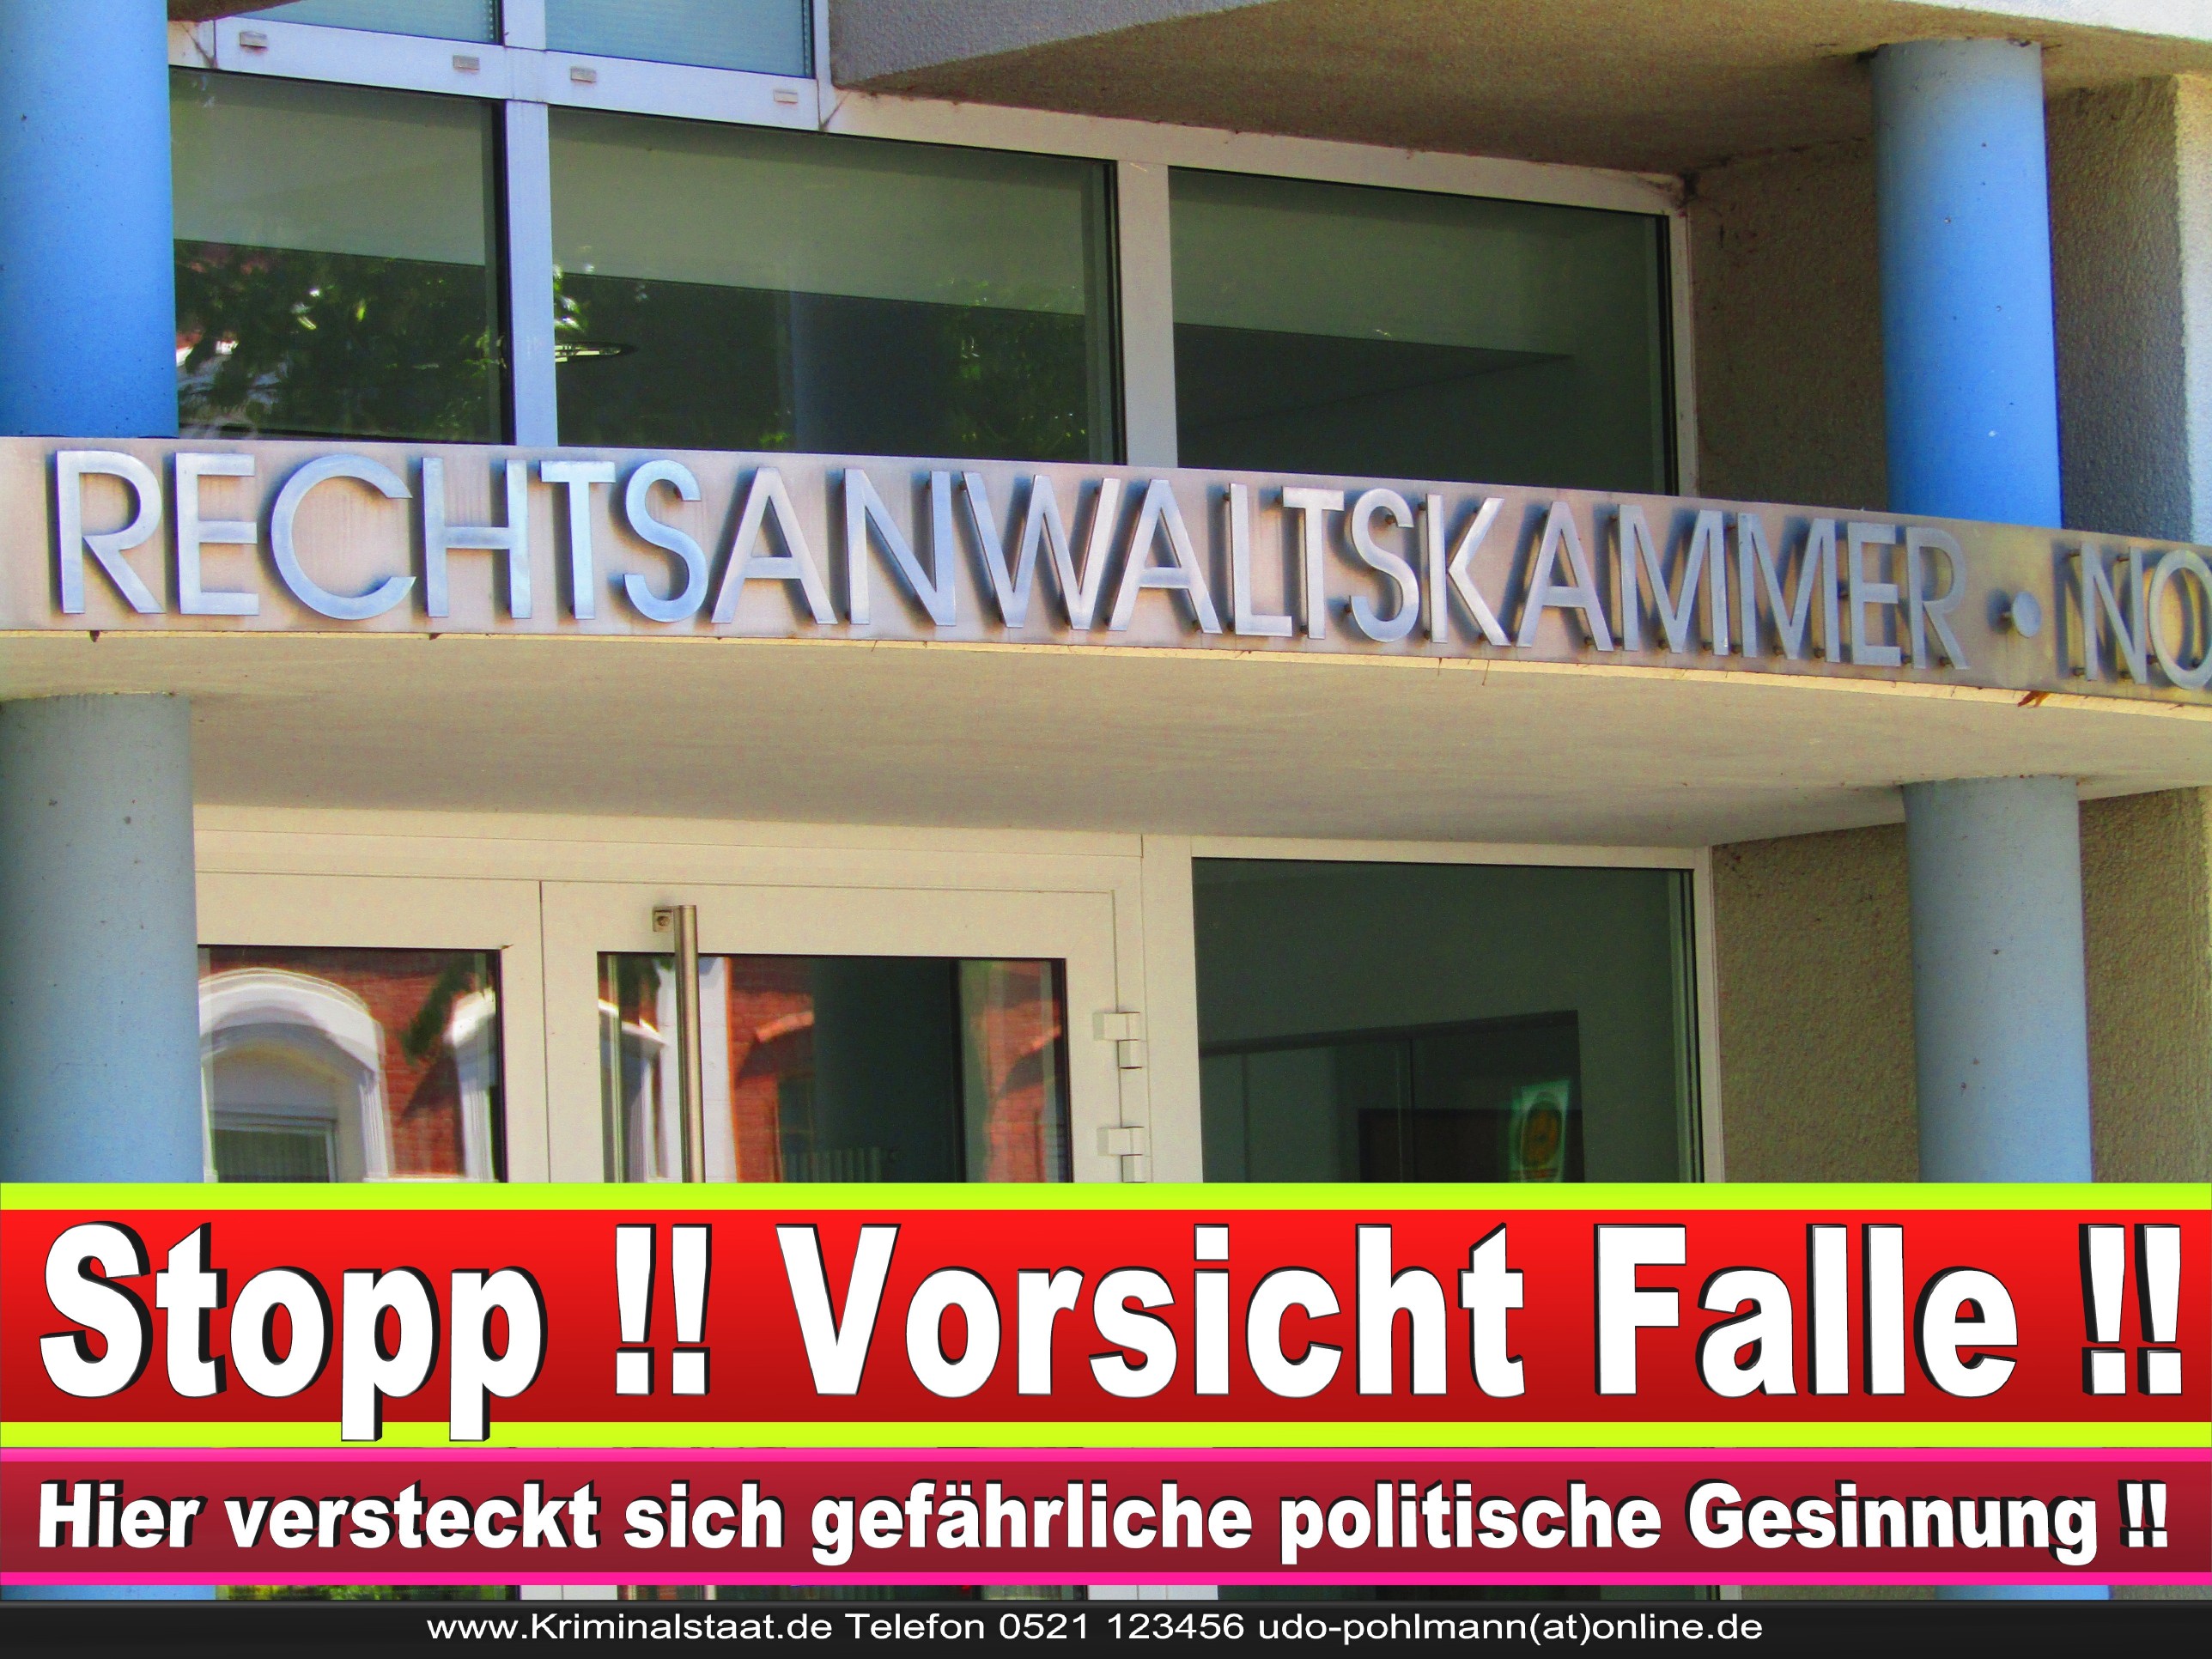 Rechtsanwaltskammer Hamm NRW Justizminister Rechtsanwalt Notar Vermögensverfall Urteil Rechtsprechung CDU SPD FDP Berufsordnung Rechtsanwälte Rechtsprechung (1) 1